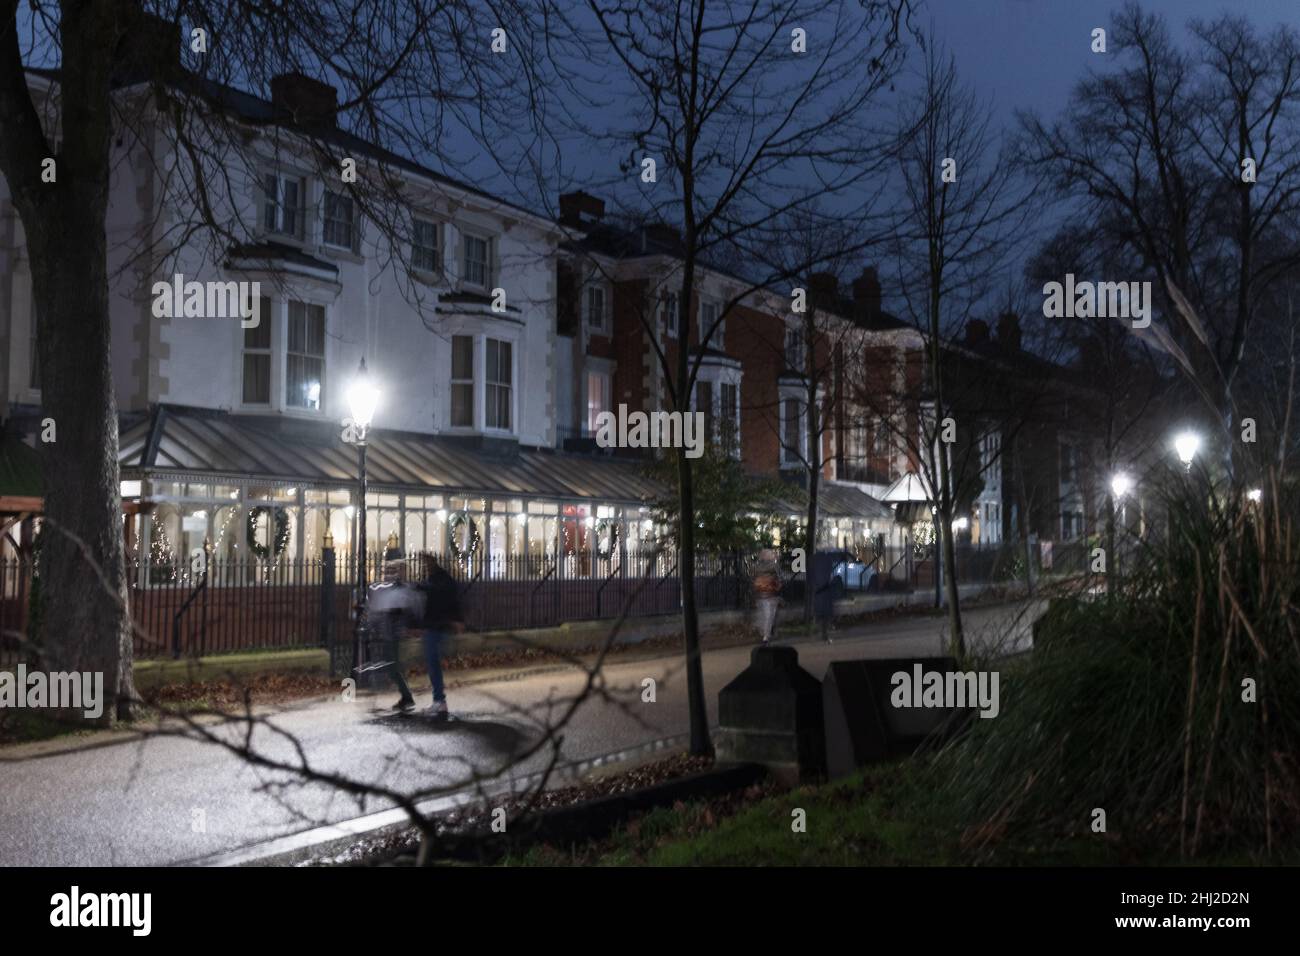 Photo nocturne de la Nouvelle promenade et de l'hôtel Belmont avec des lumières de Noël et des rampes en fer forgé.Montre les gens qui descendent, avec un flou de mouvement. Banque D'Images